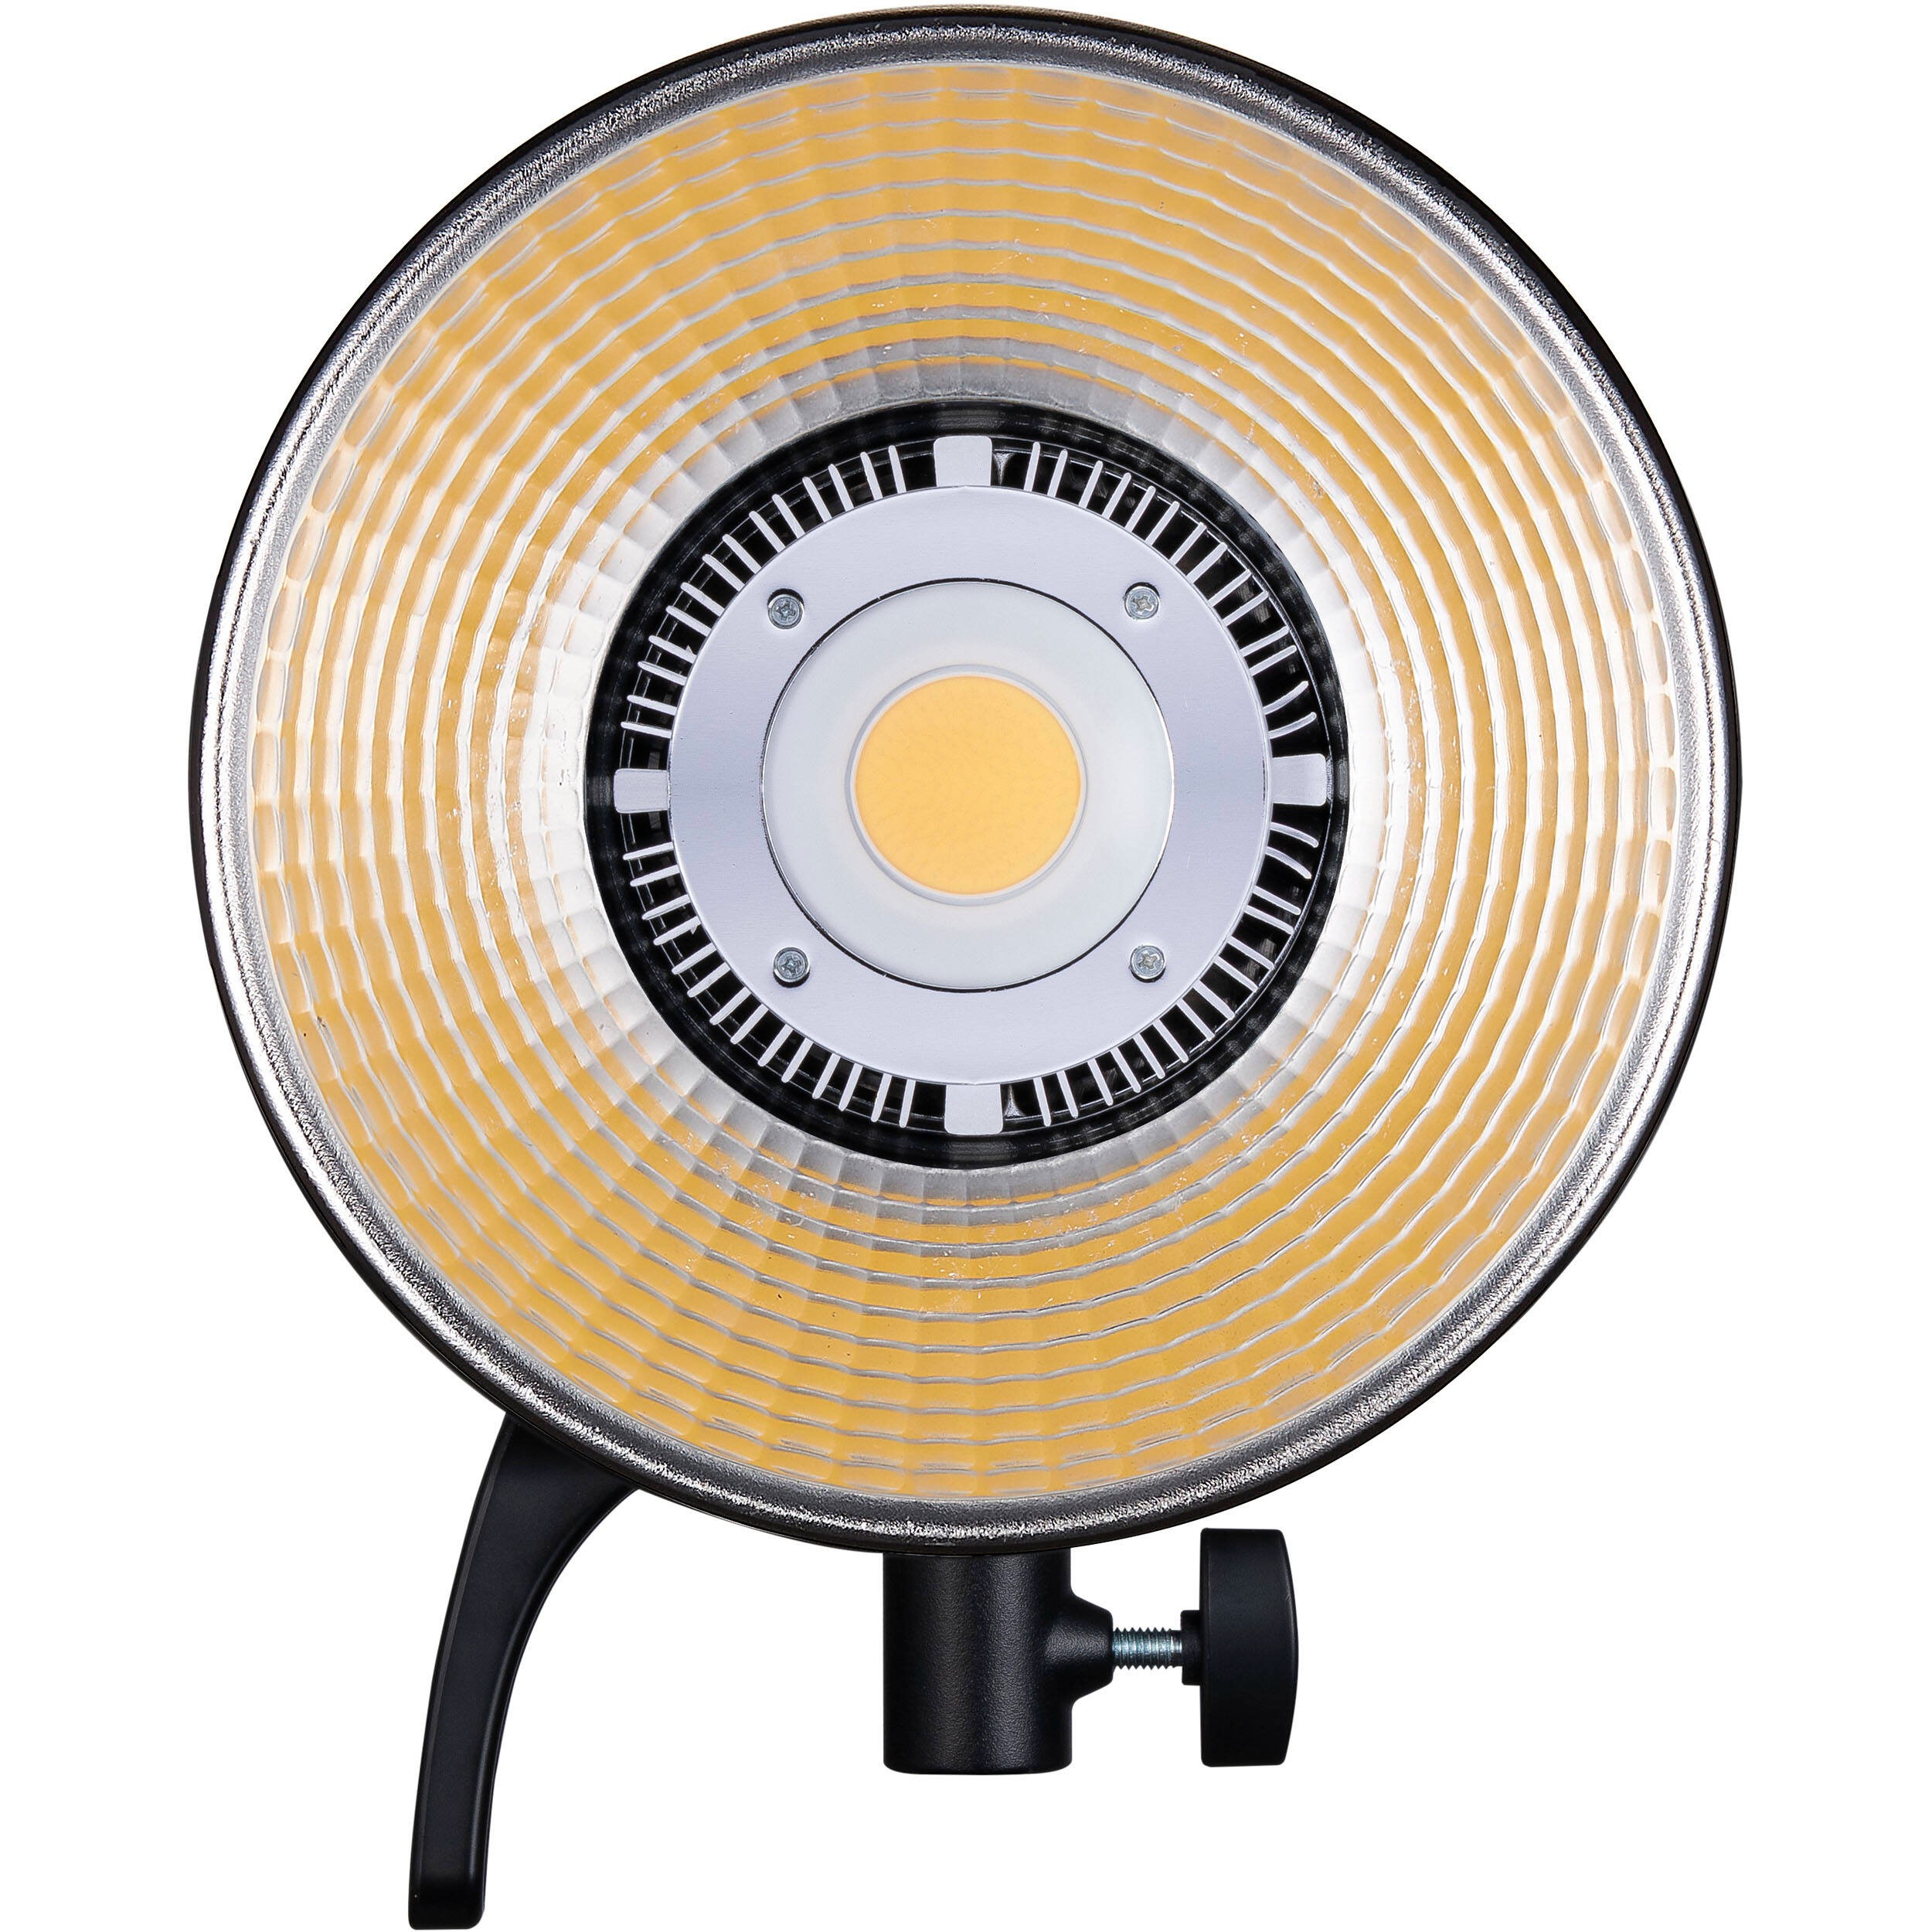 Đèn Godox SL60IID Daylight LED Video Light